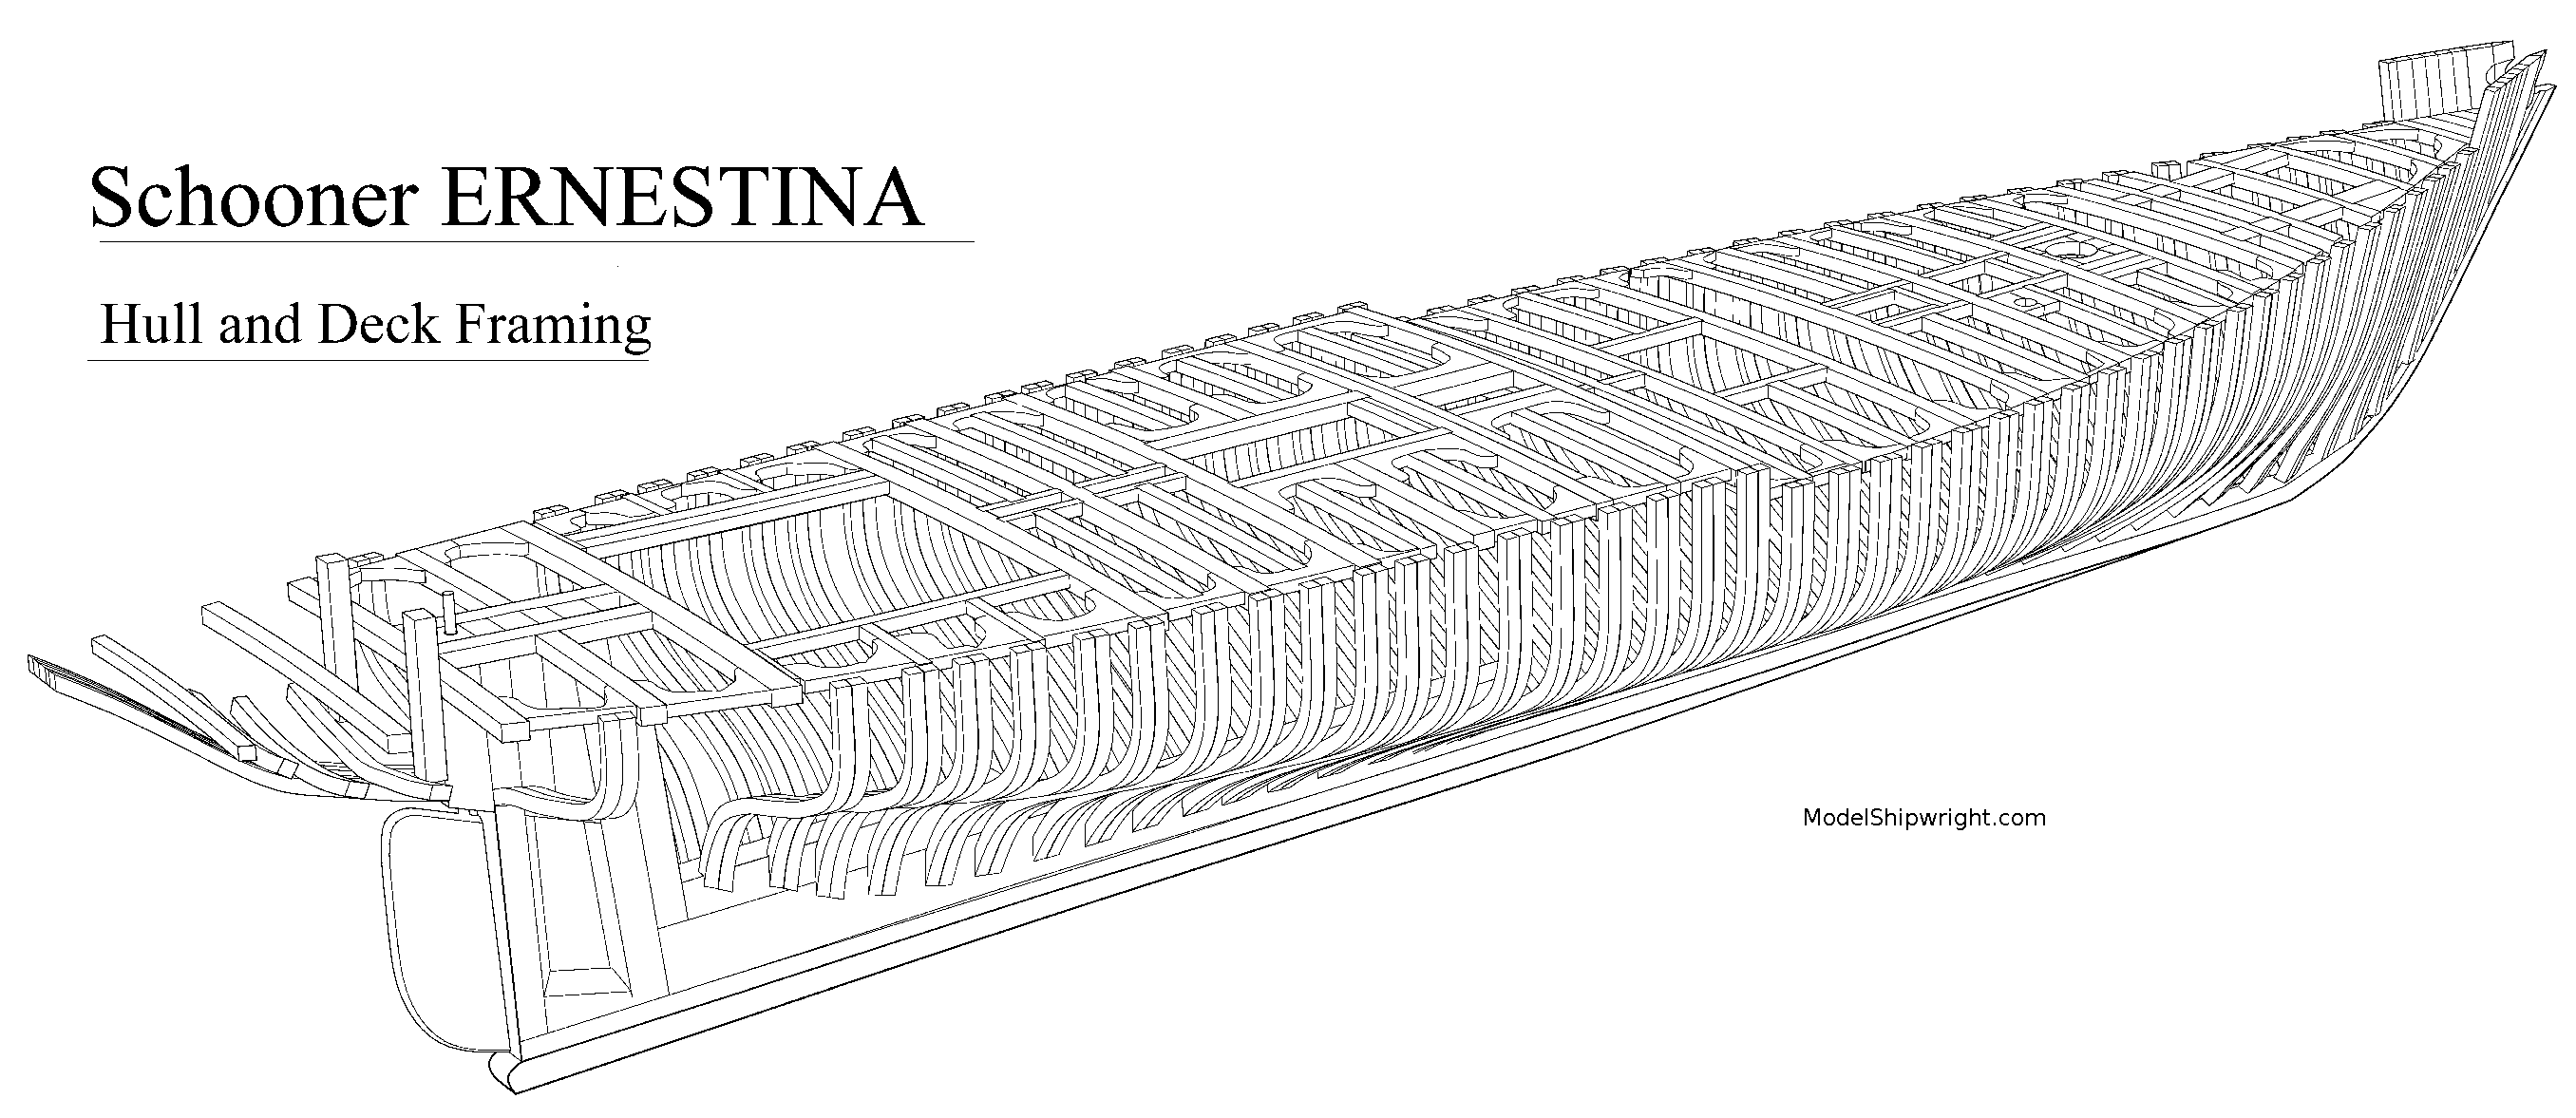 Figure 1. Perspective view of Grand Banks fishing schooner Ernestina 